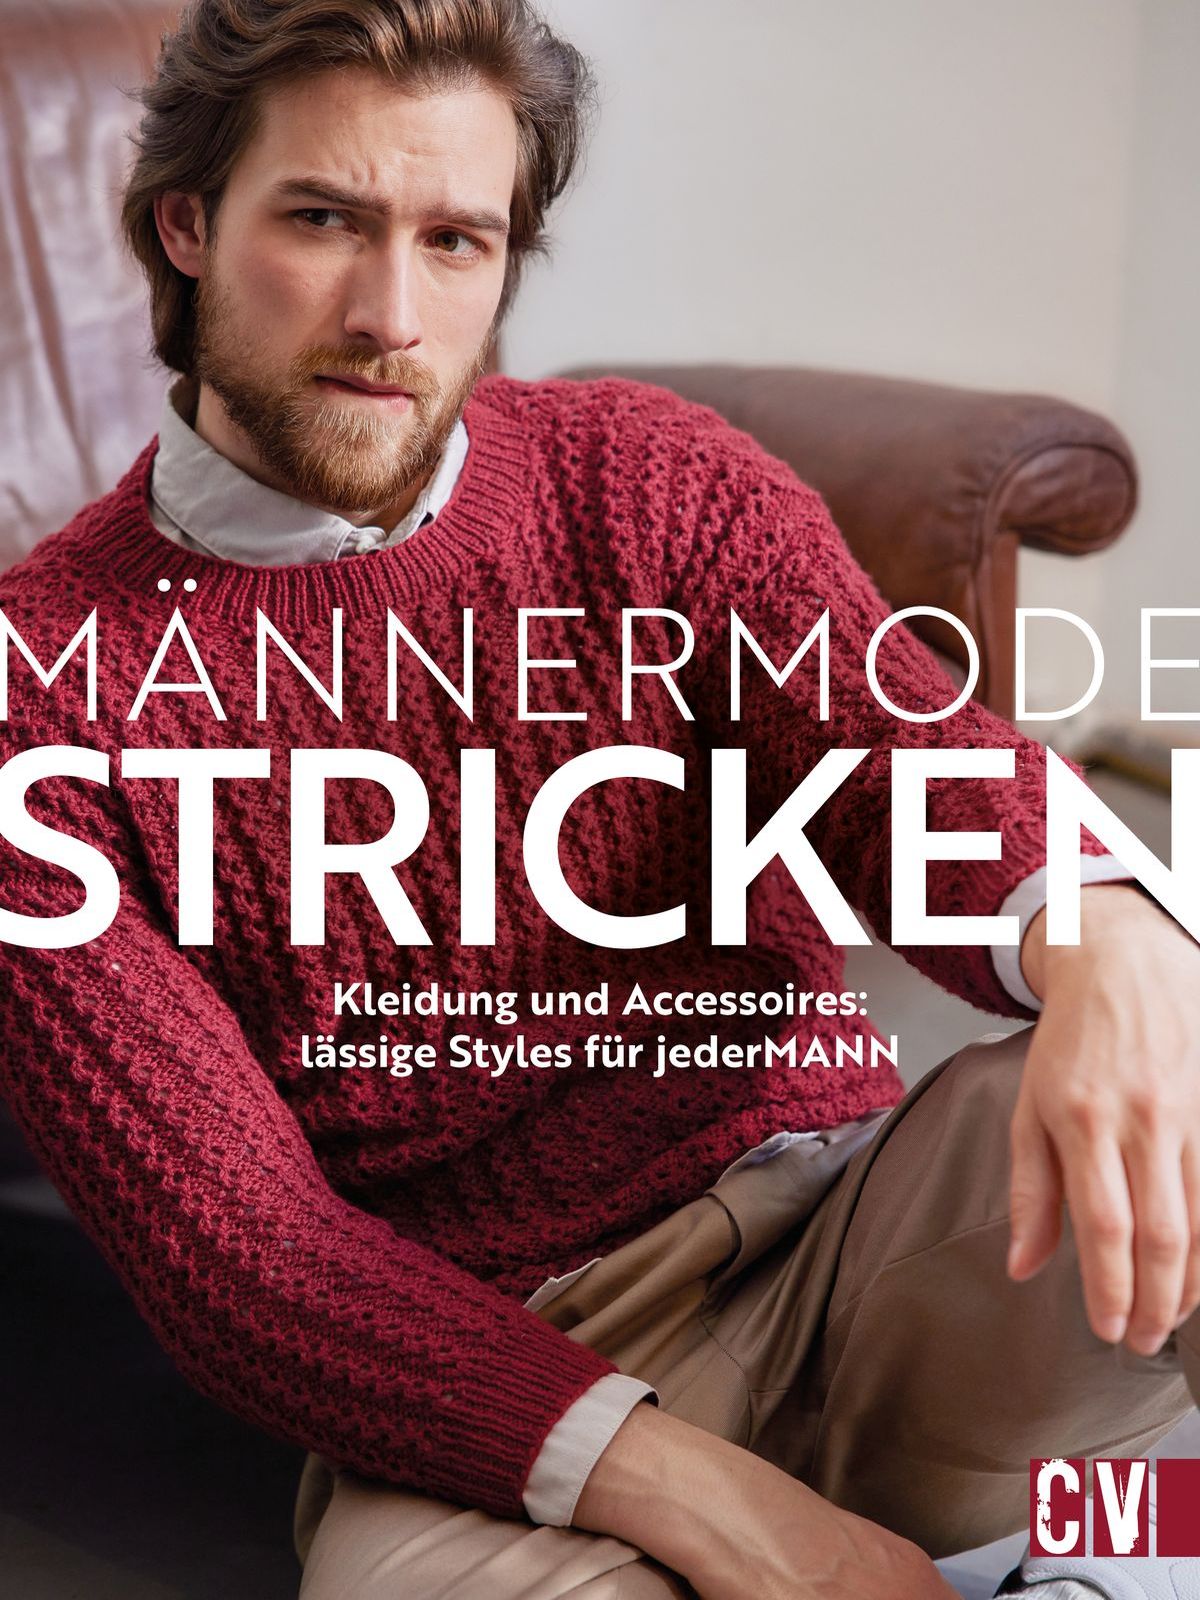 Foto: Gelesen - Strick-Fashion für den Mann.